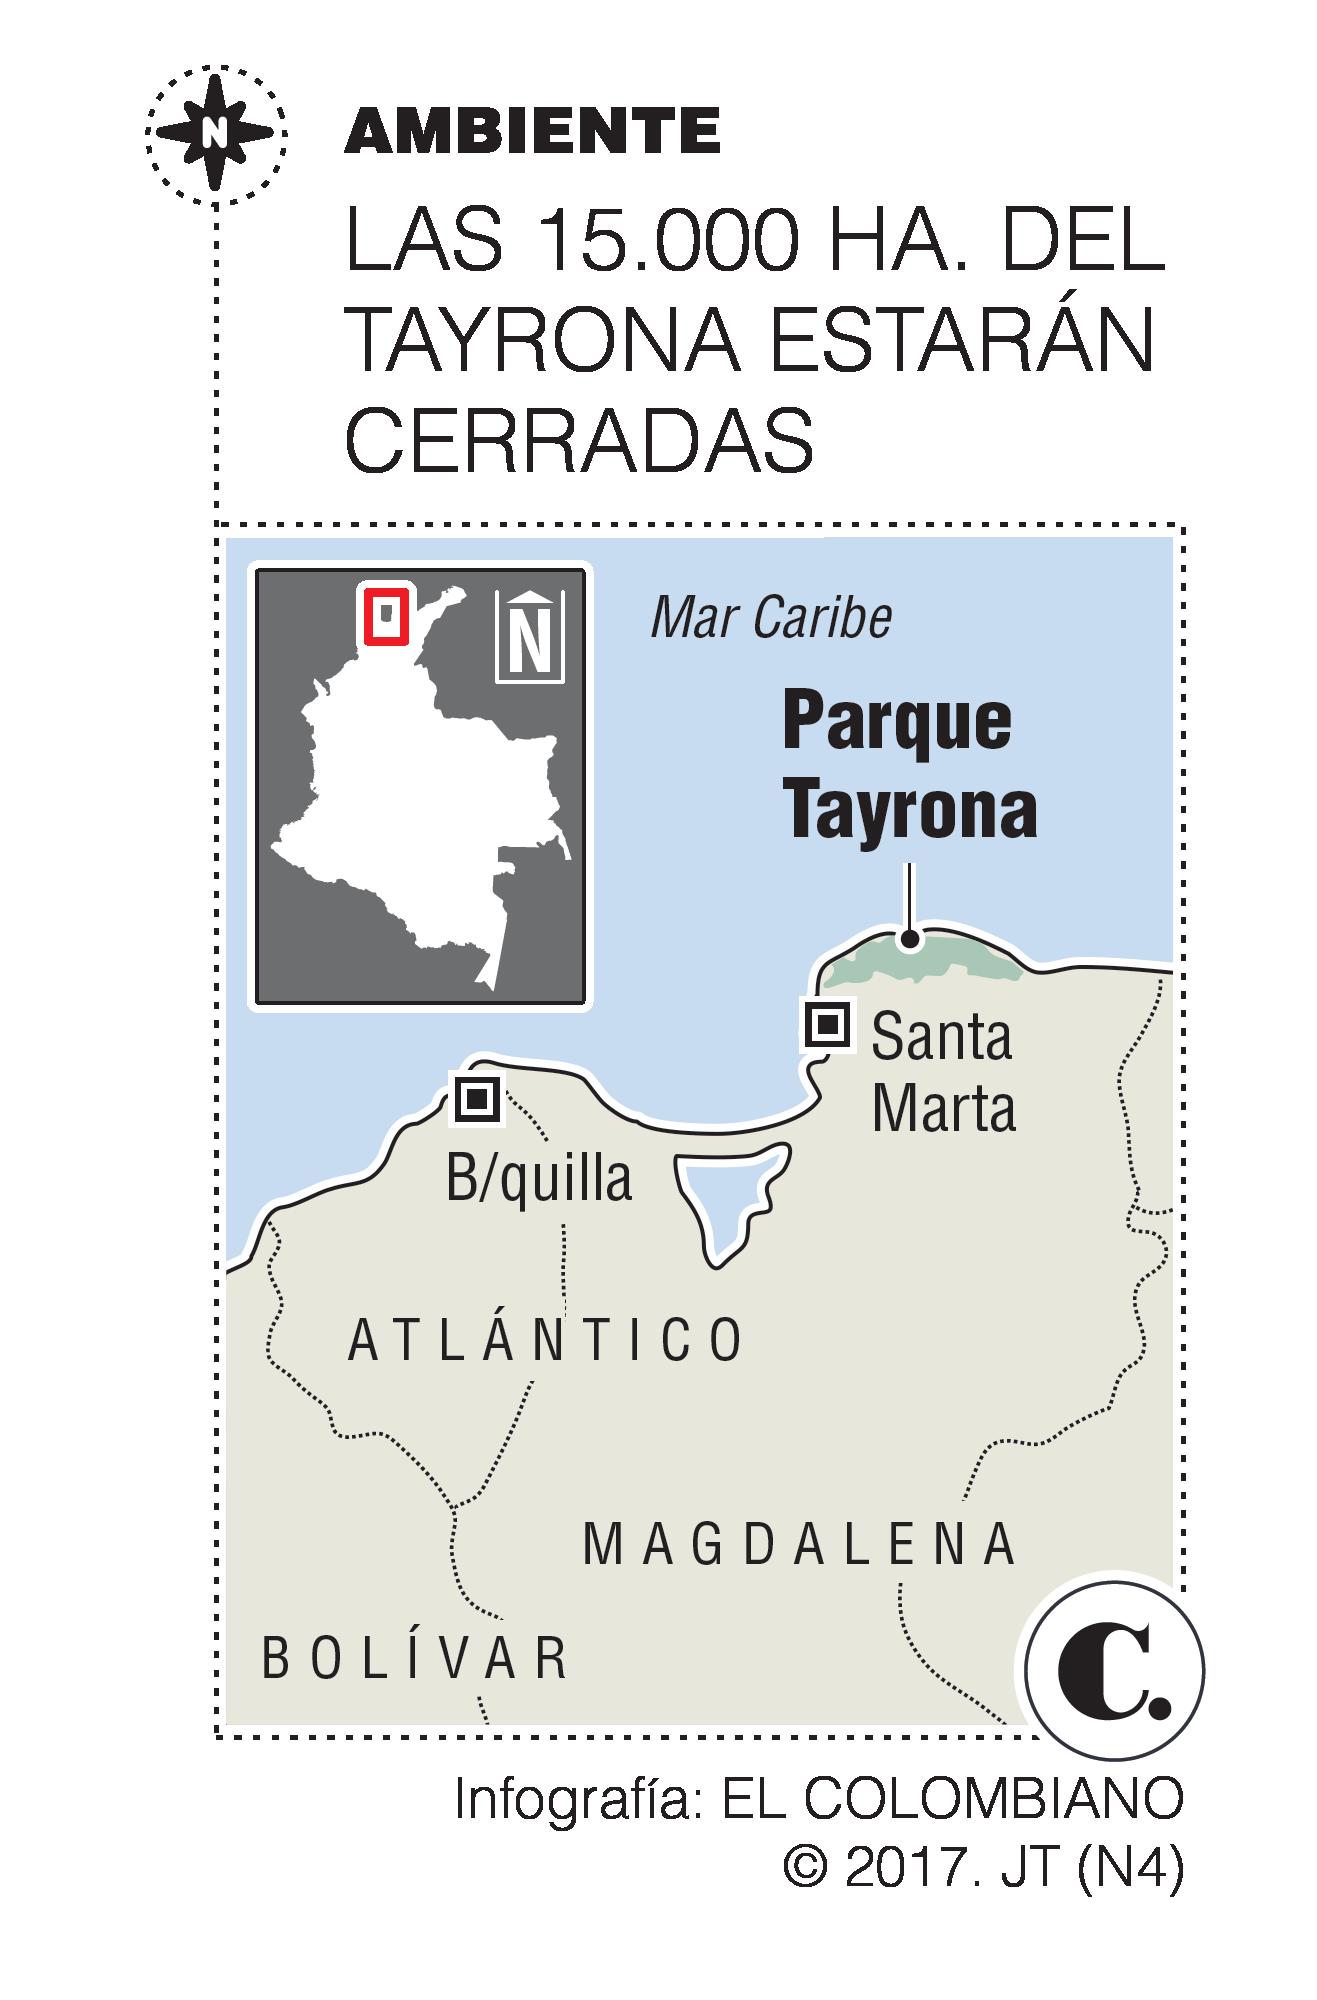 Cierre del Tayrona unirá a cuatro pueblos indígenas